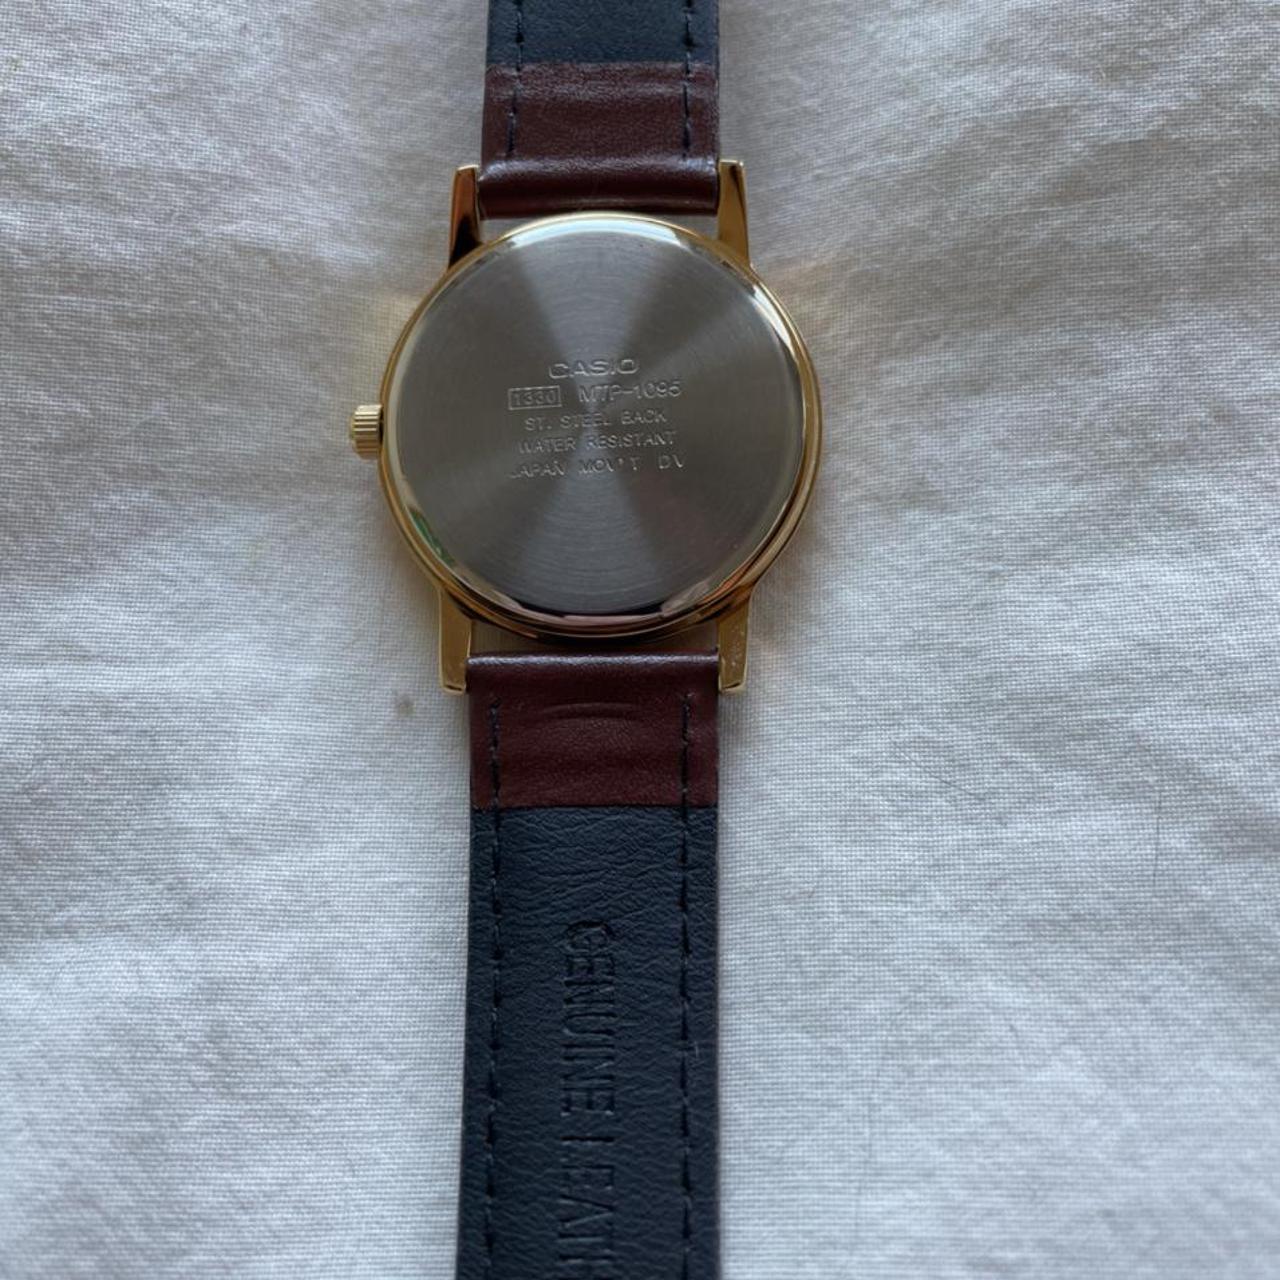 Product Image 3 - Casio quartz gold tone watch.